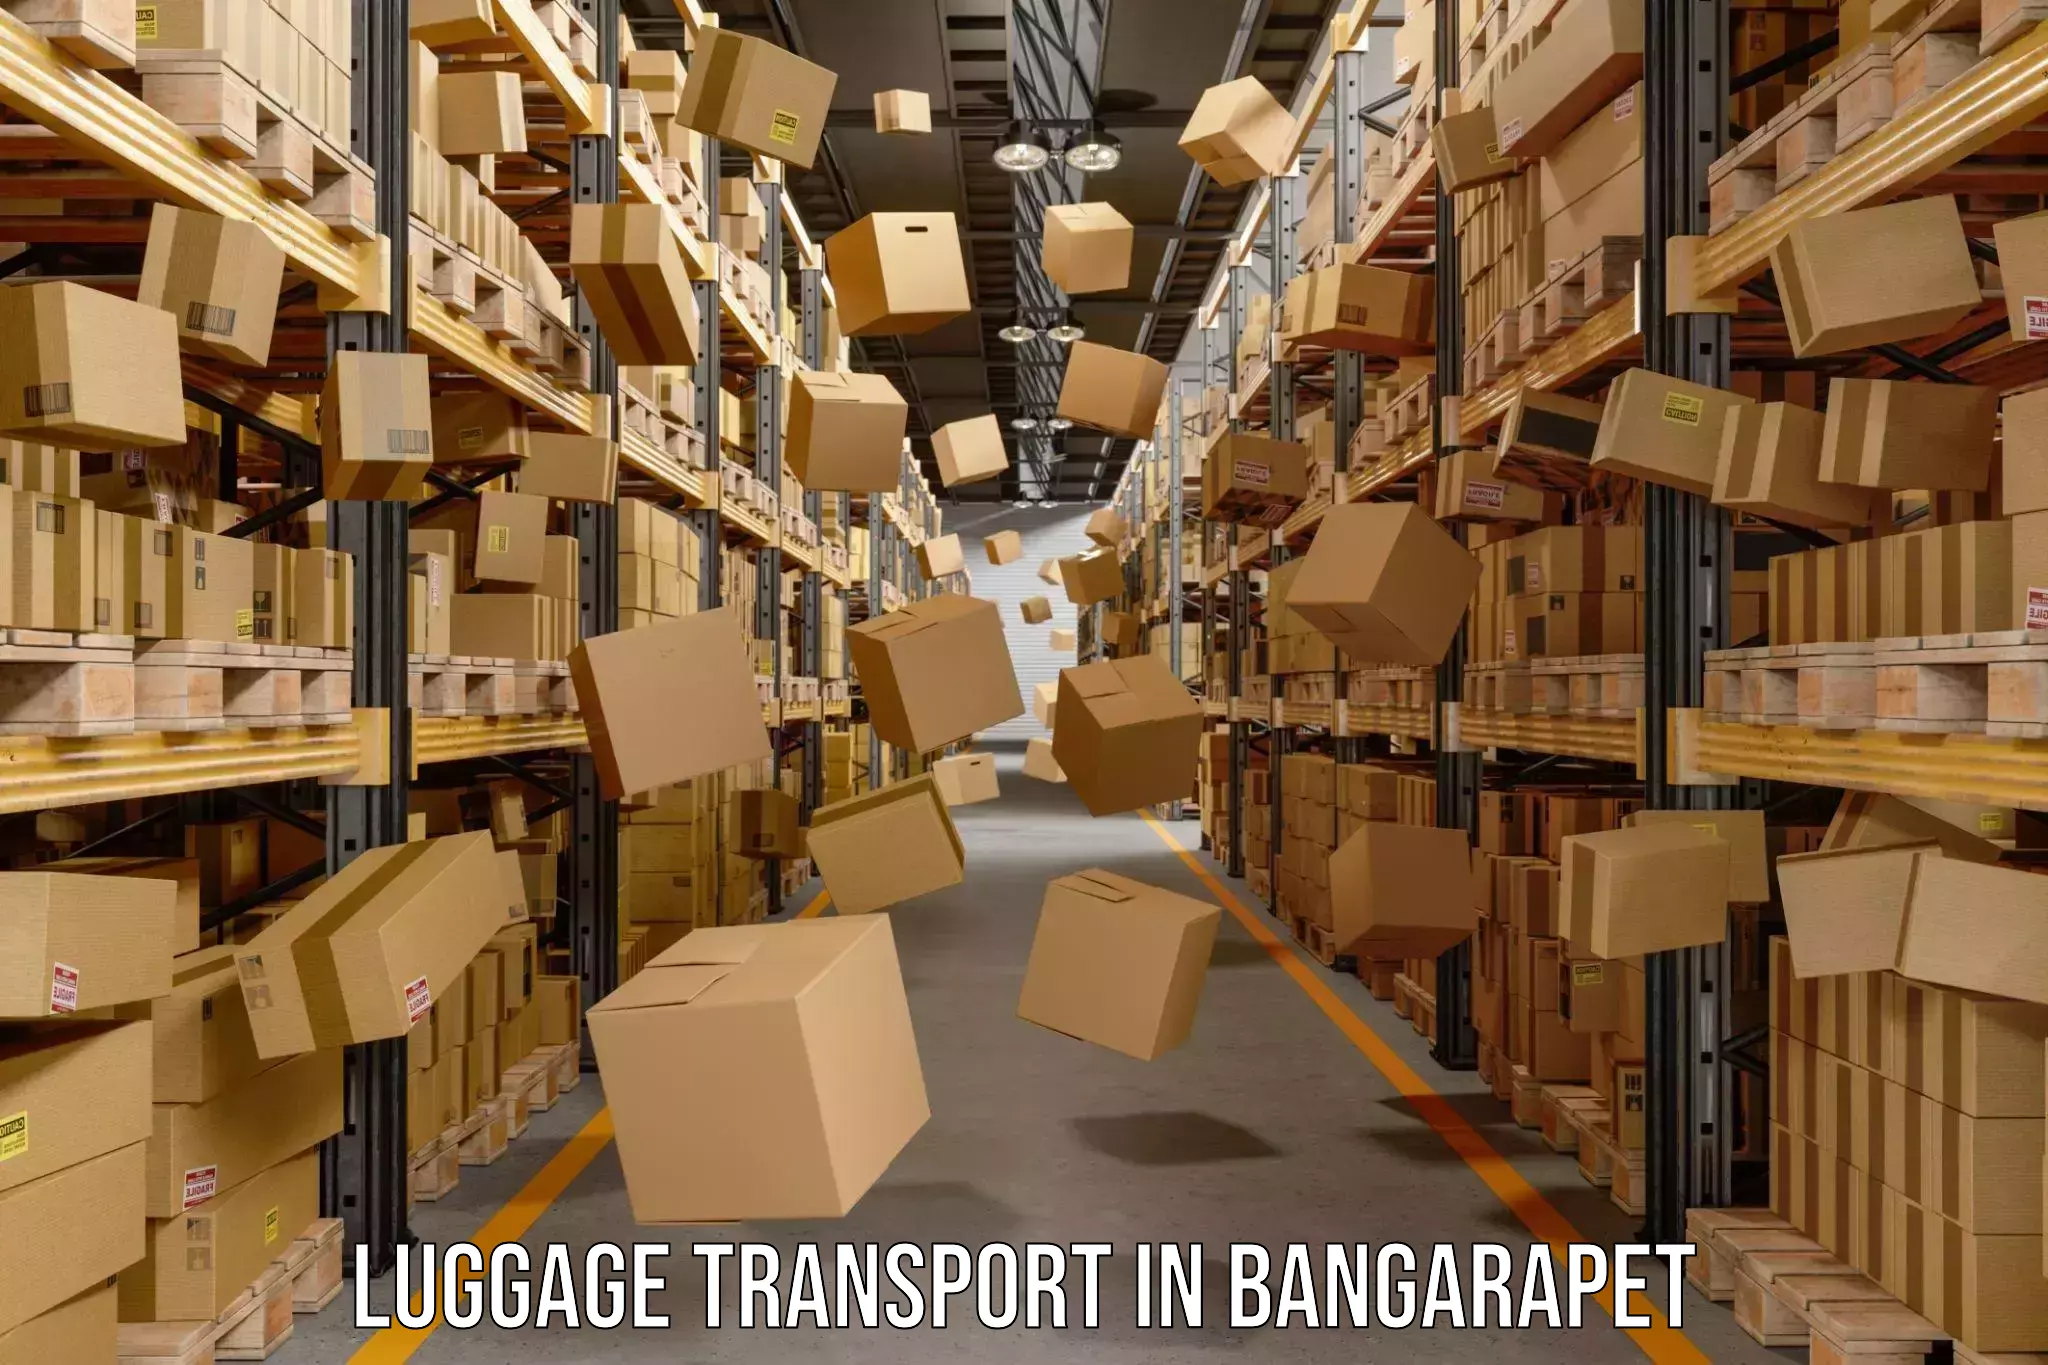 Luggage transit service in Bangarapet